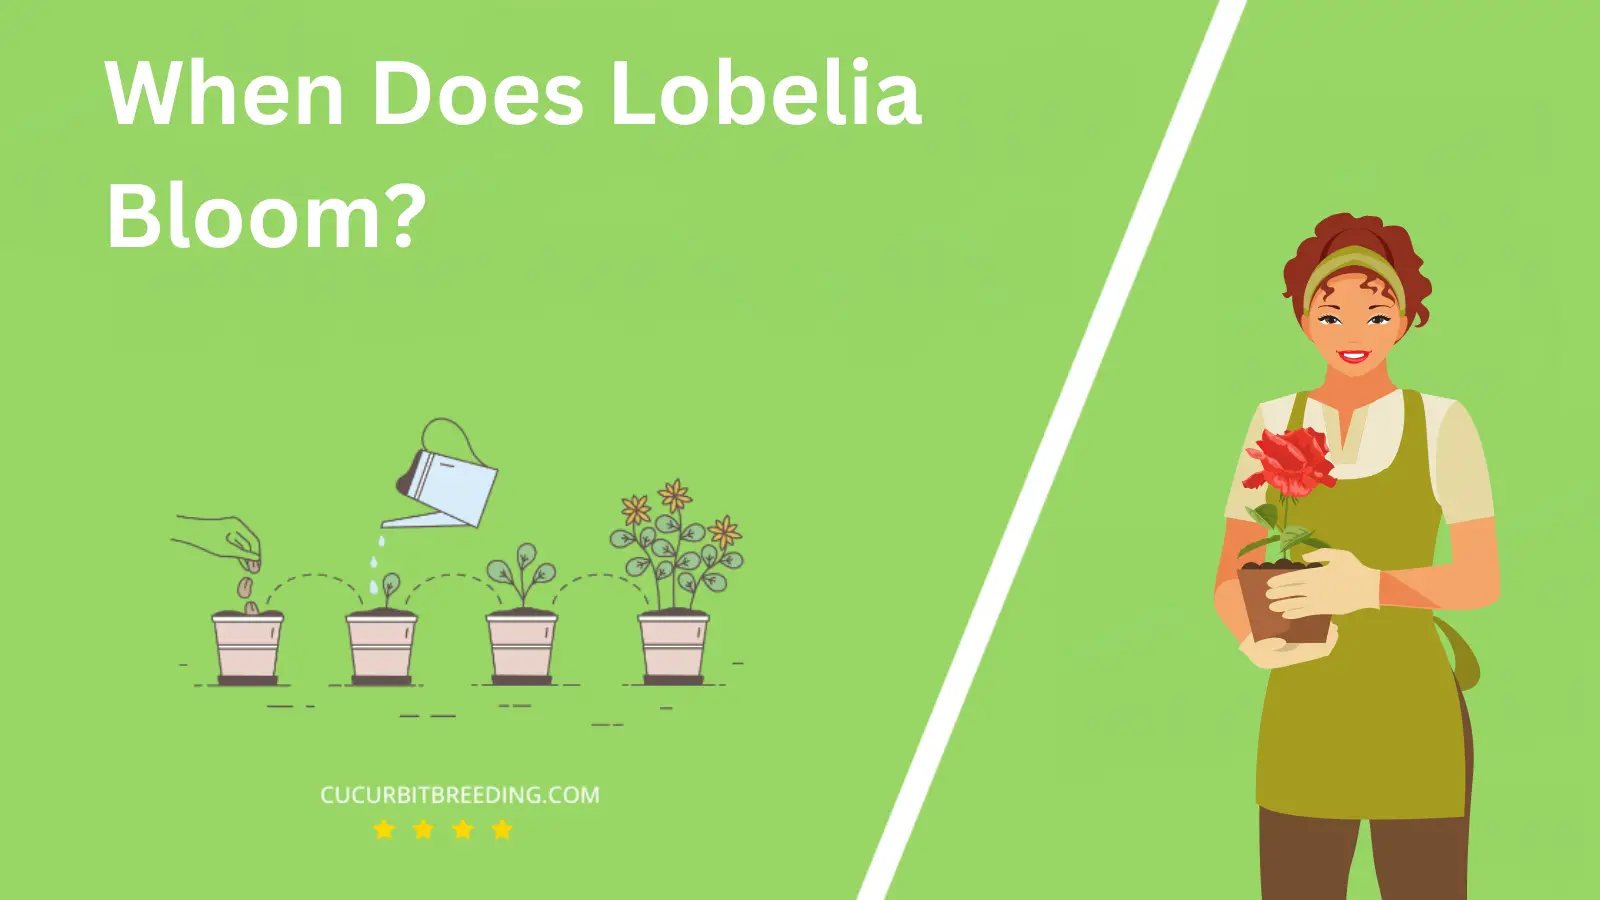 When Does Lobelia Bloom?